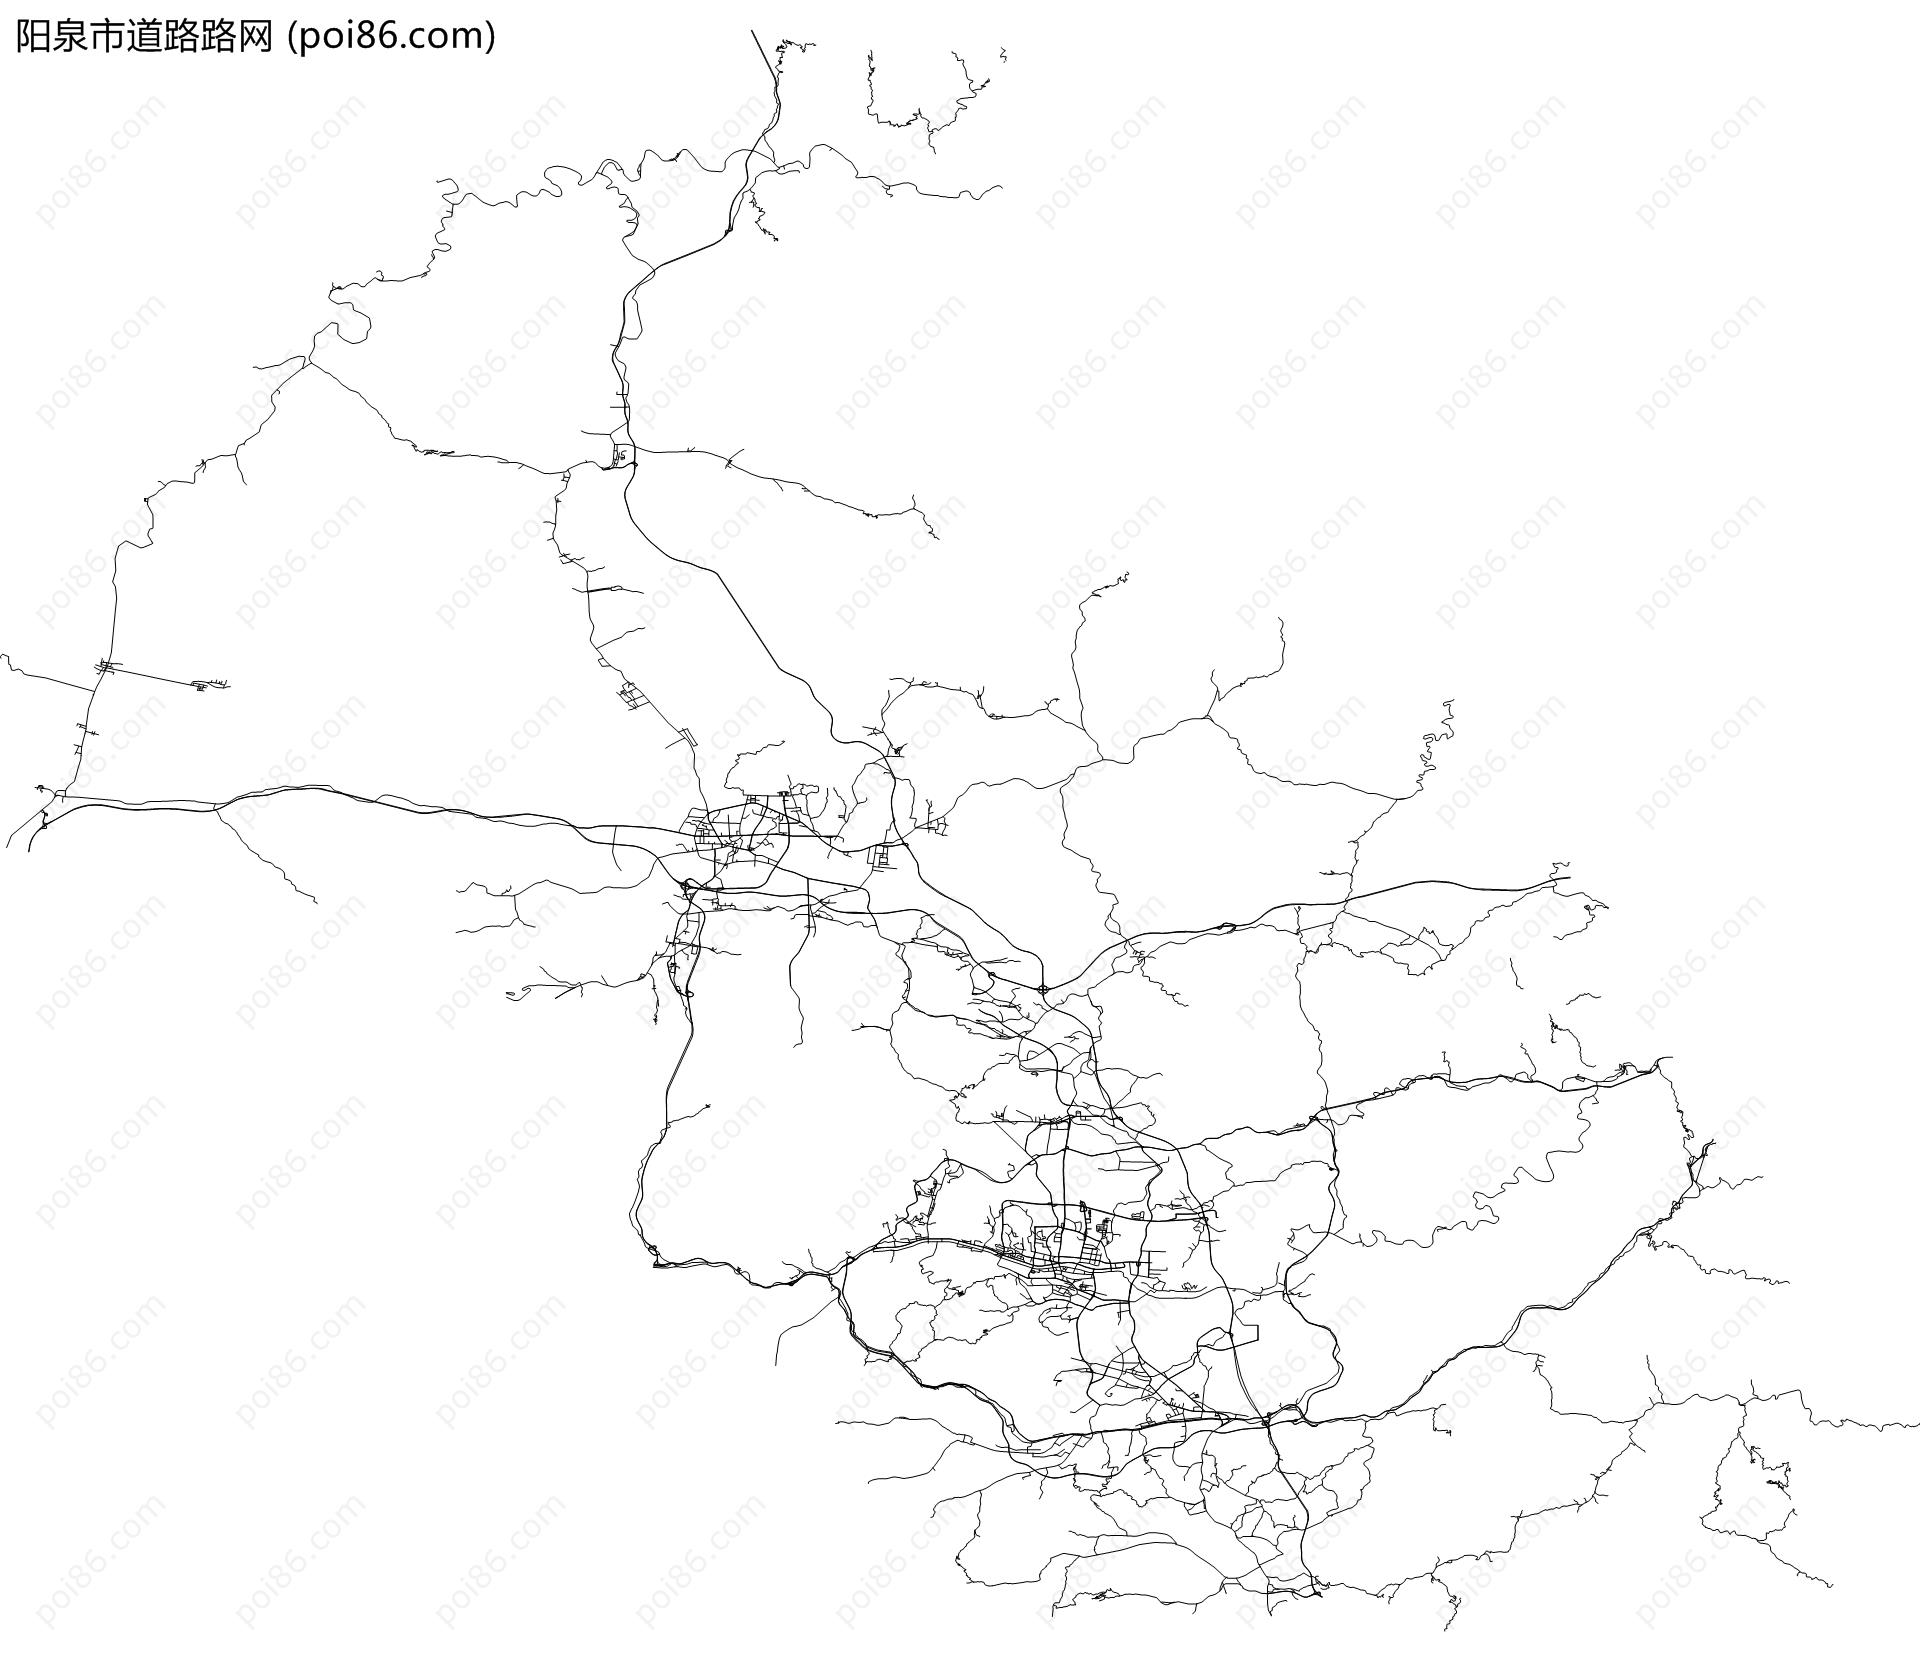 阳泉市道路路网地图